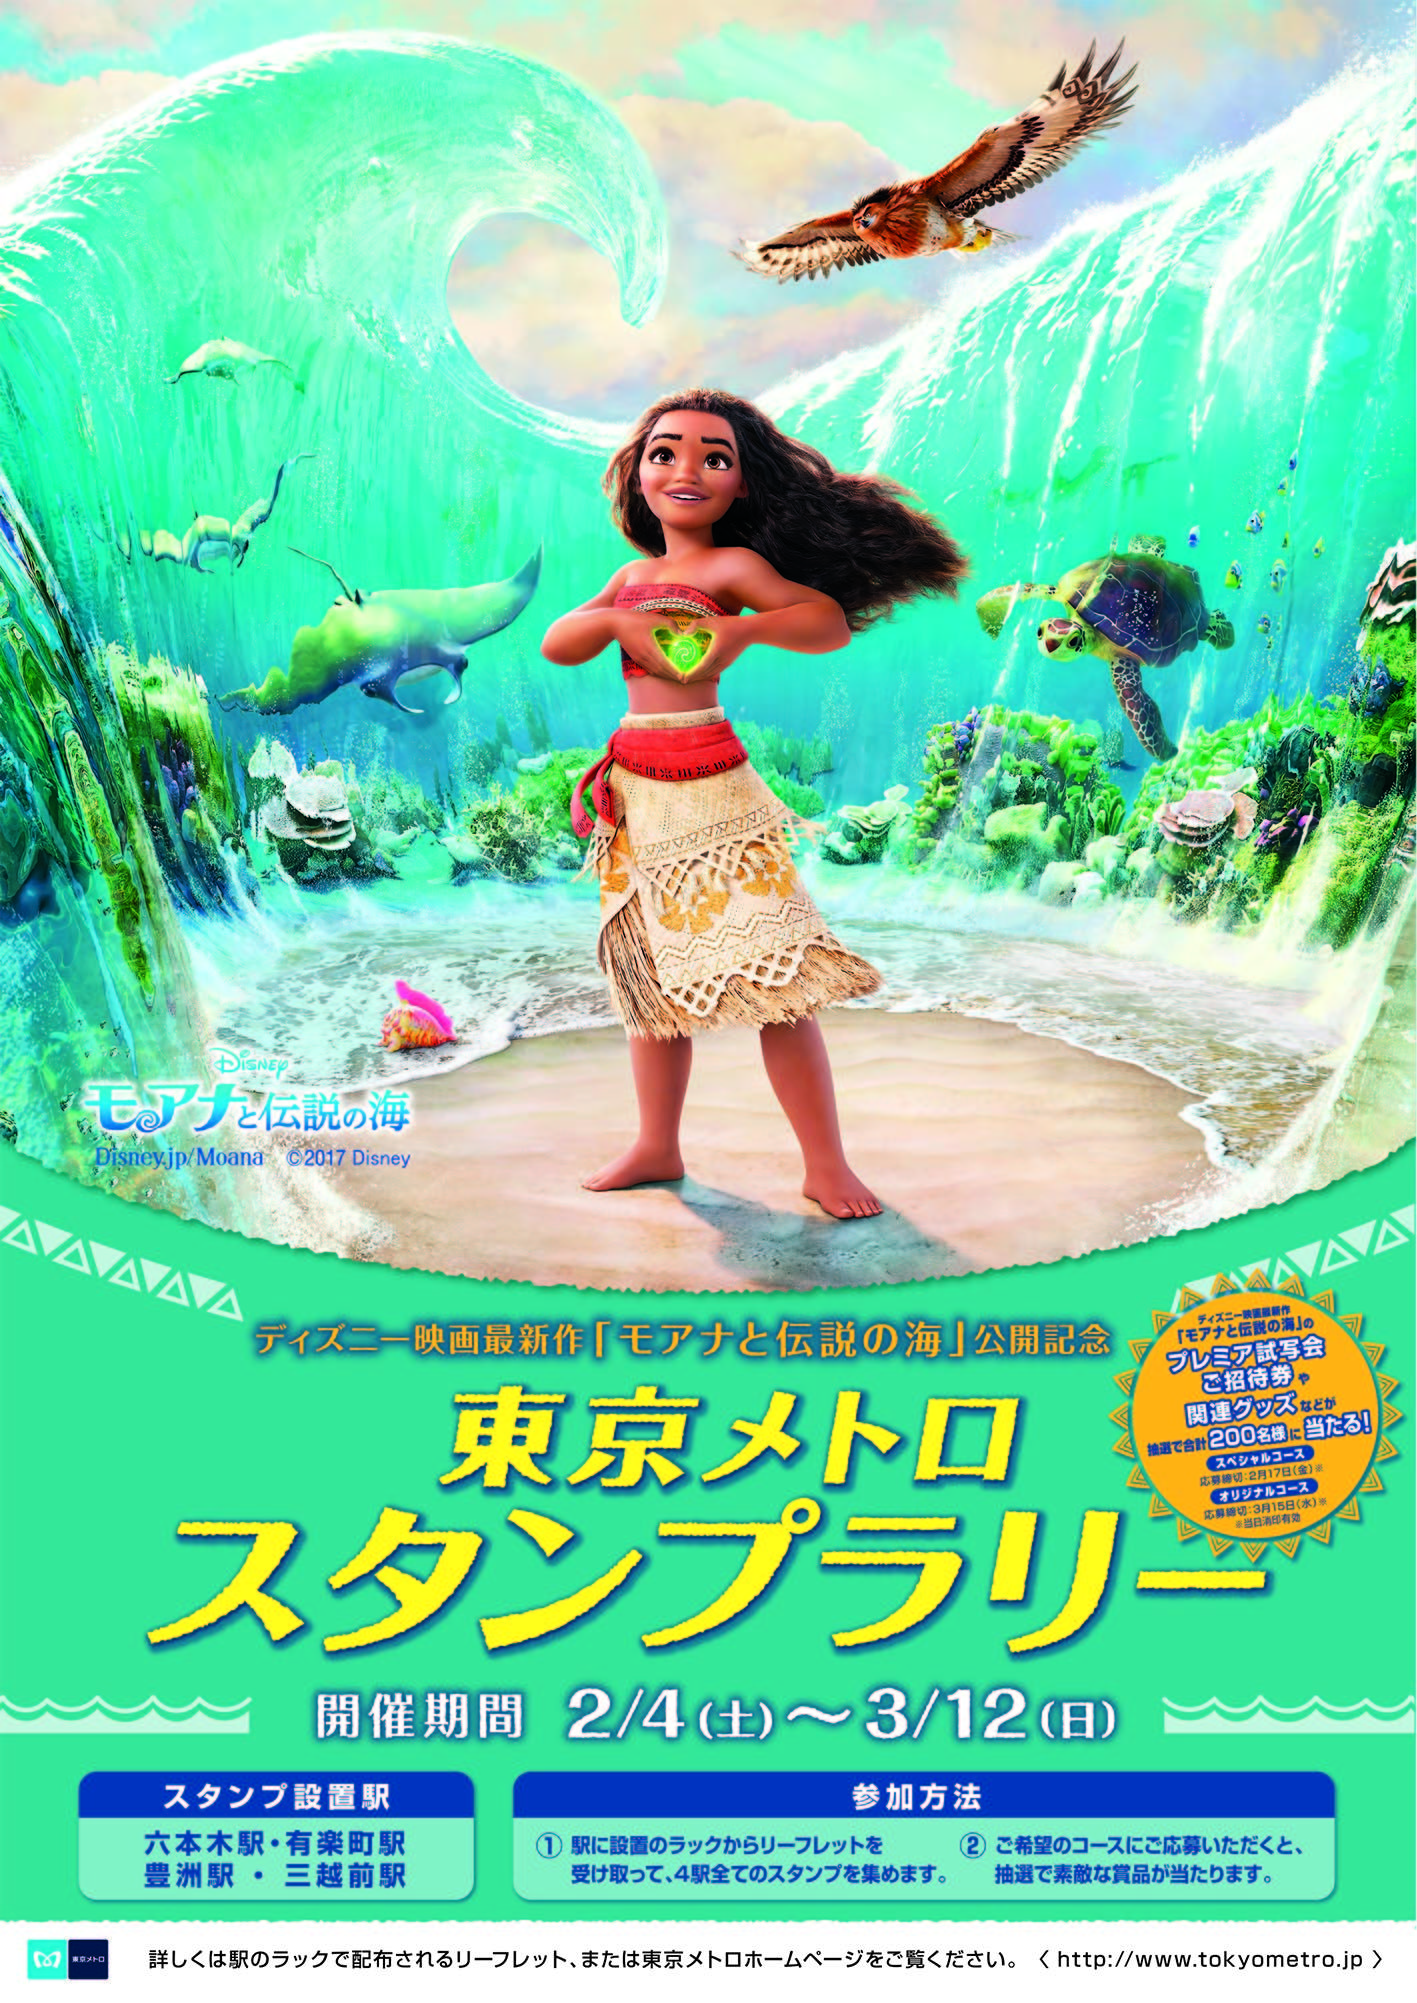 ディズニー映画最新作 モアナと伝説の海 公開記念 東京メトロスタンプラリーを開催します 東京メトロ